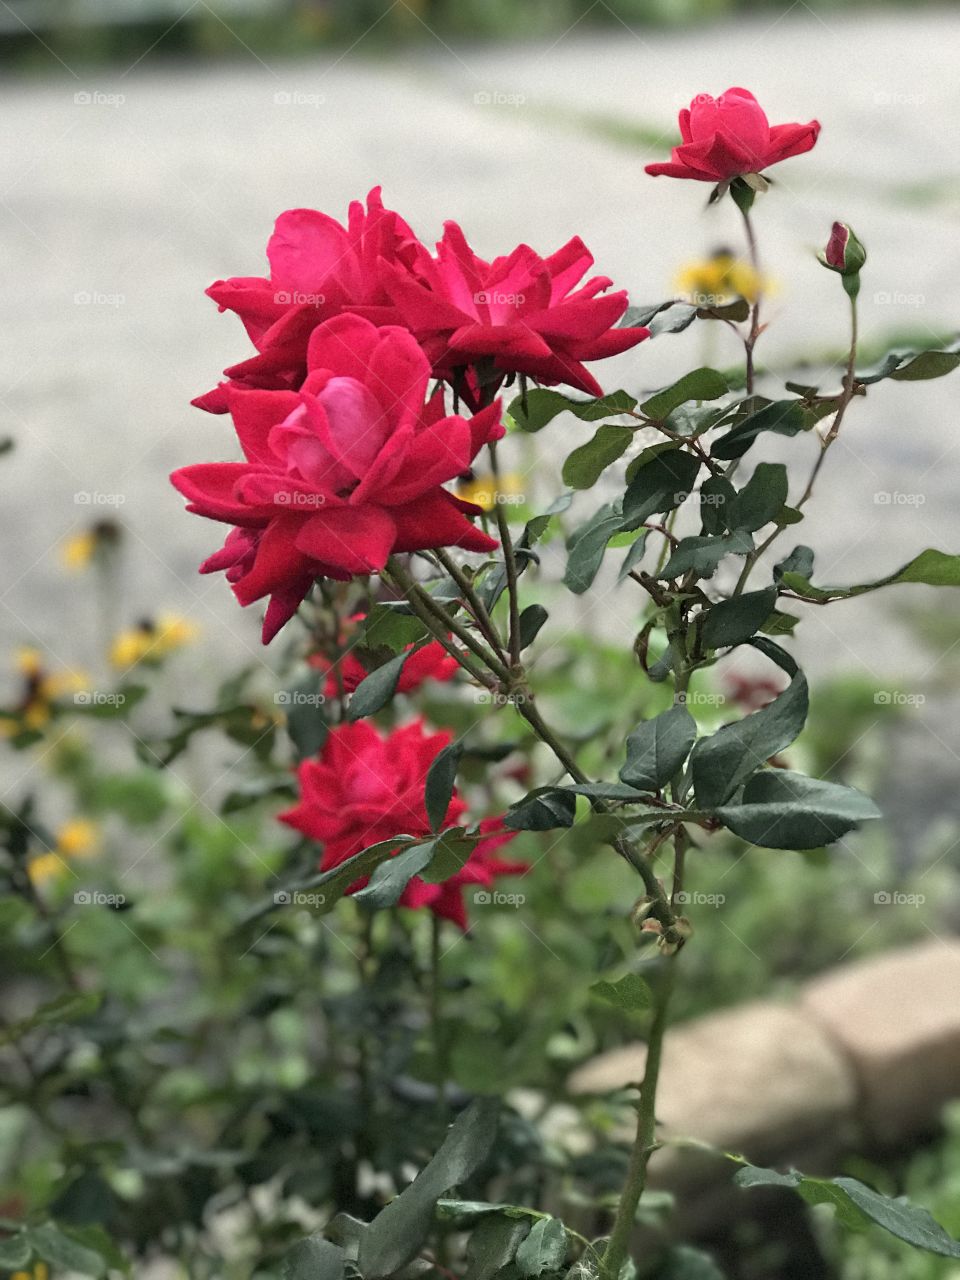 Grandma’s Roses